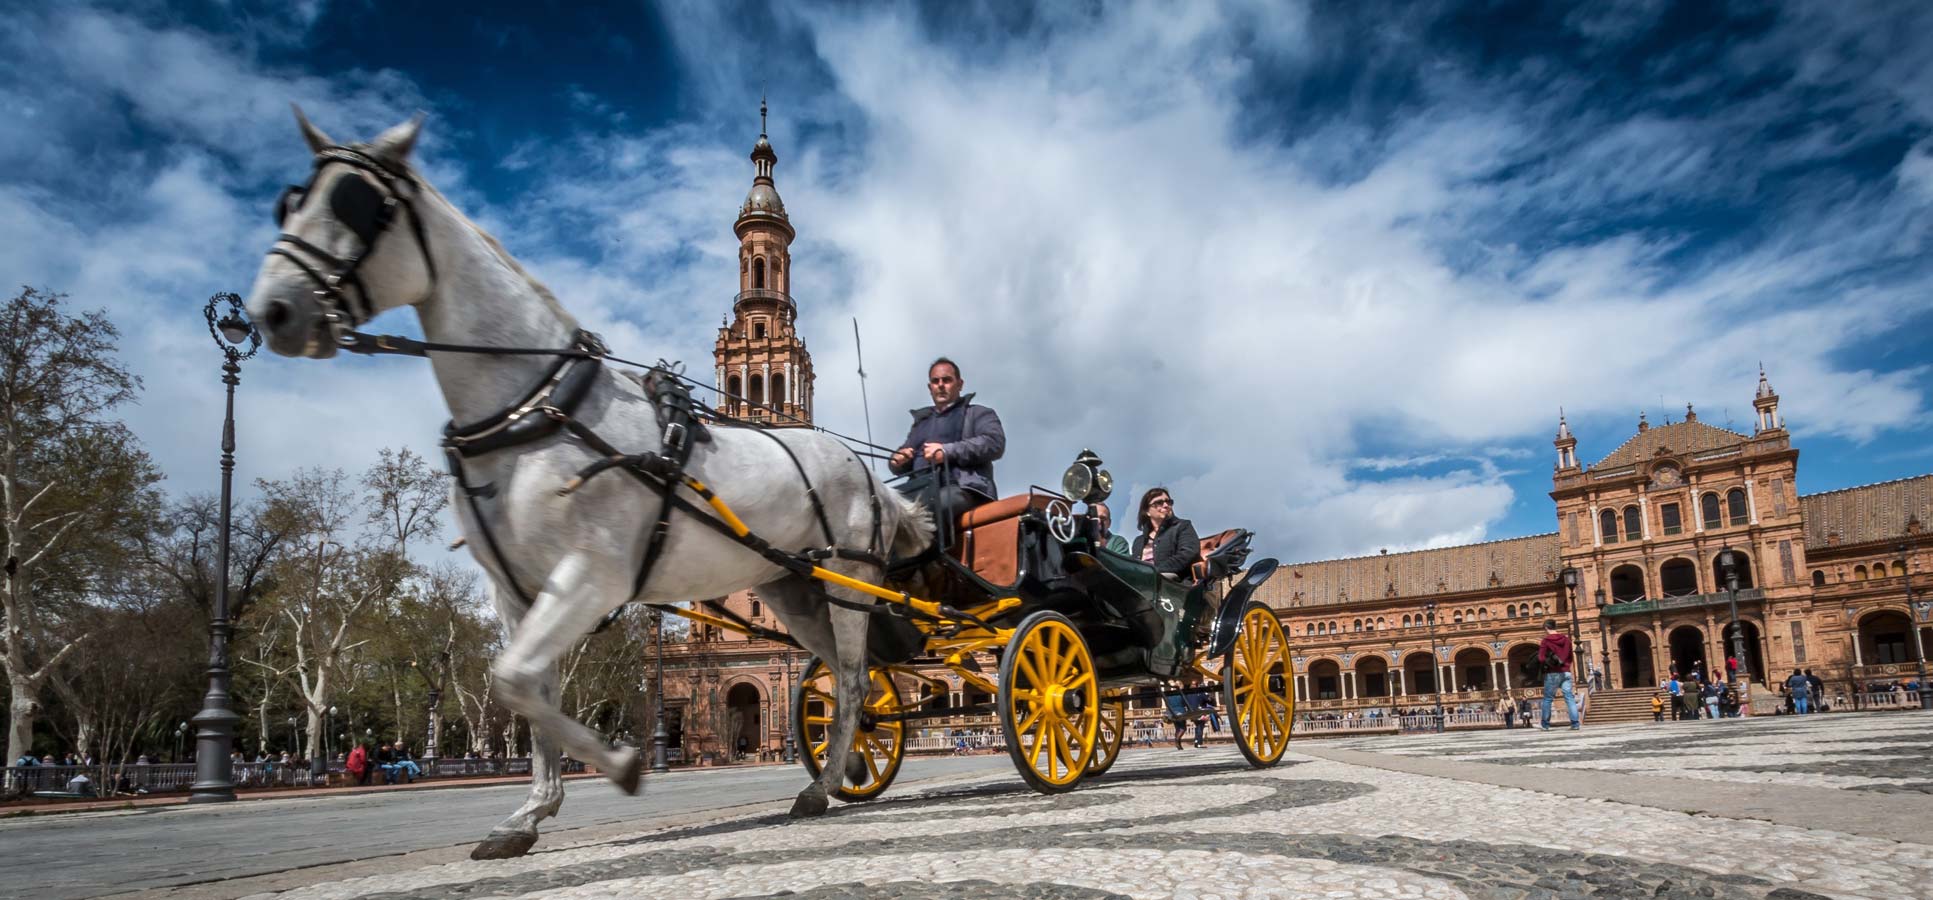 Travel reviews Seville Spain